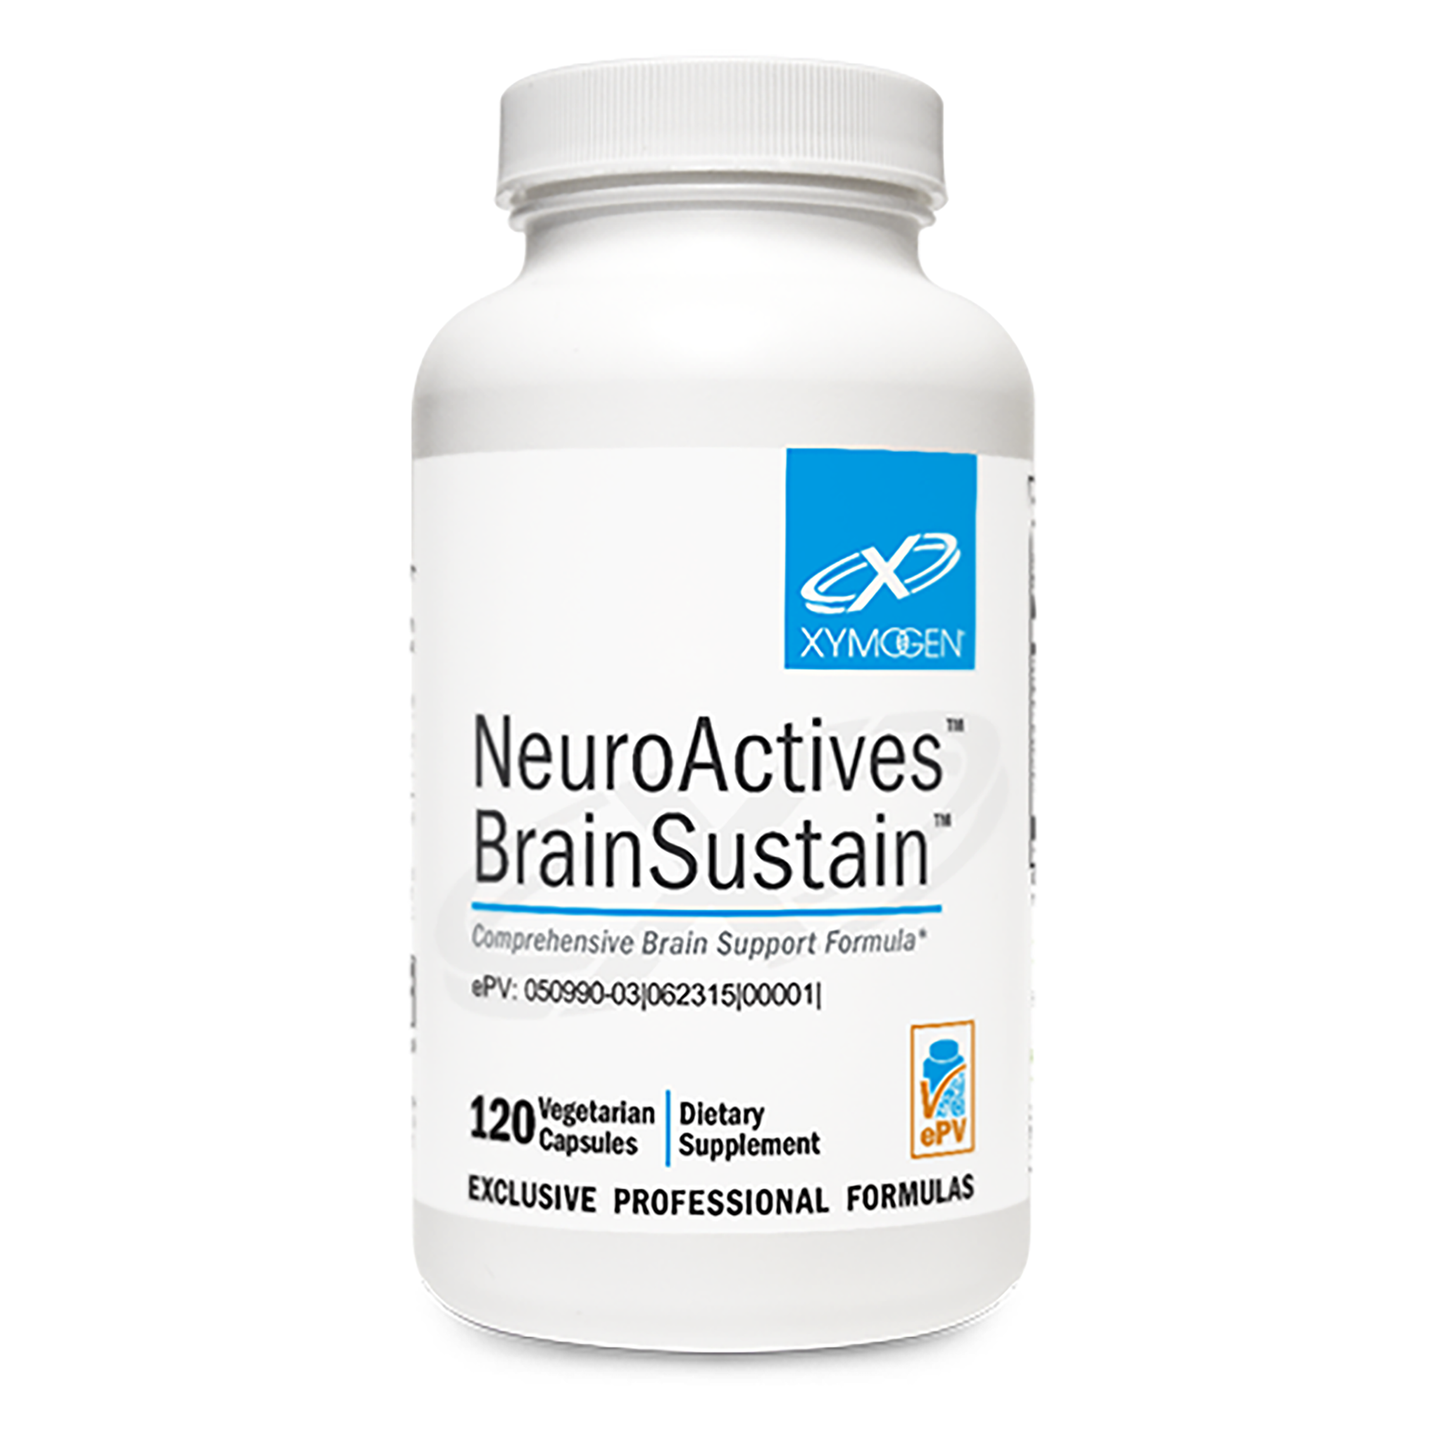 NeuroActives BrainSustain 120ct